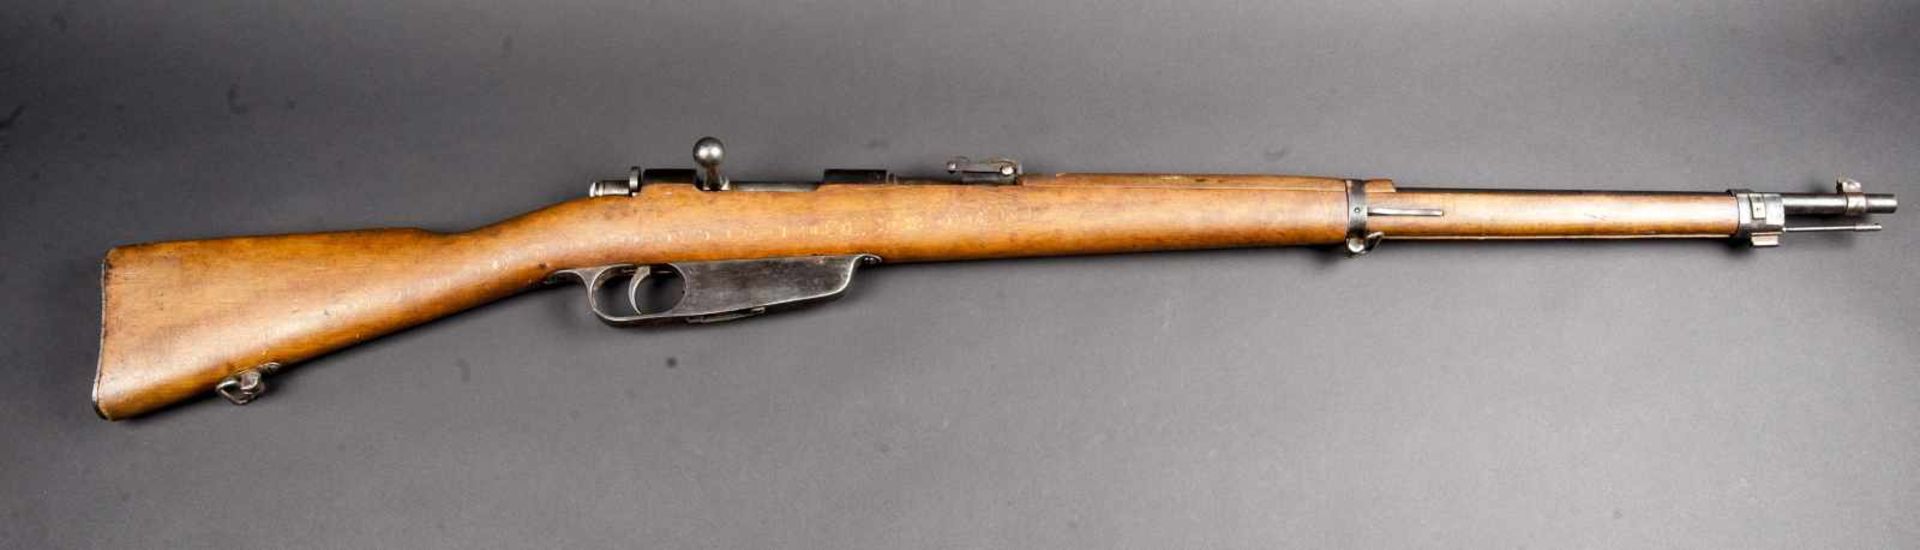 Fusil carcano neutralisé Crosse en bois, avec tampon marqué FAT 1946. Numéro AZ 9453. Baguette de - Bild 2 aus 4